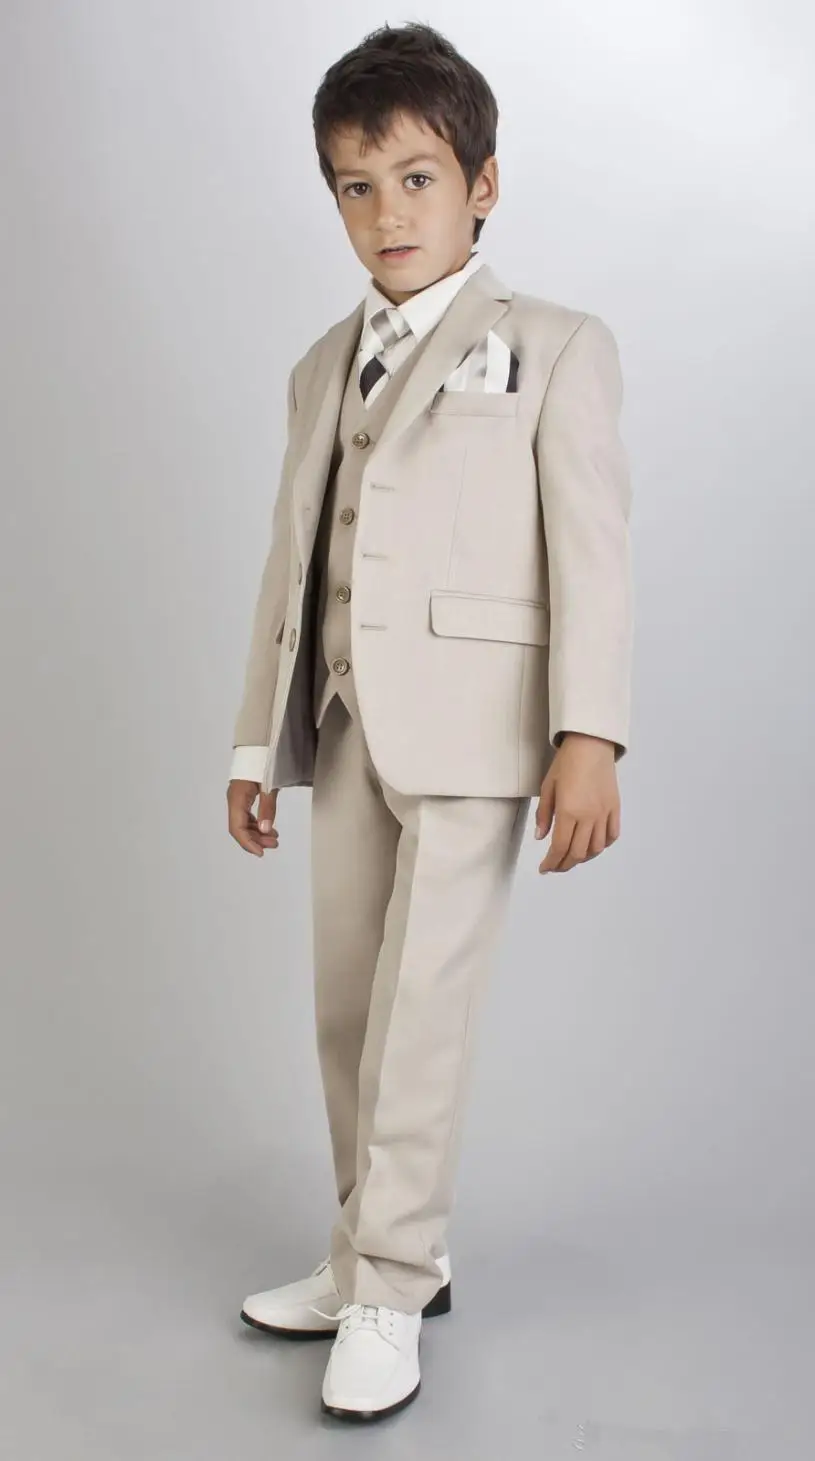 Горячая распродажа белые детские костюмы индивидуальный свадебный костюм для мальчиков наряд жениха для мальчиков смокинг детская одежда(куртка+ брюки+ жилет - Цвет: as pictures shows